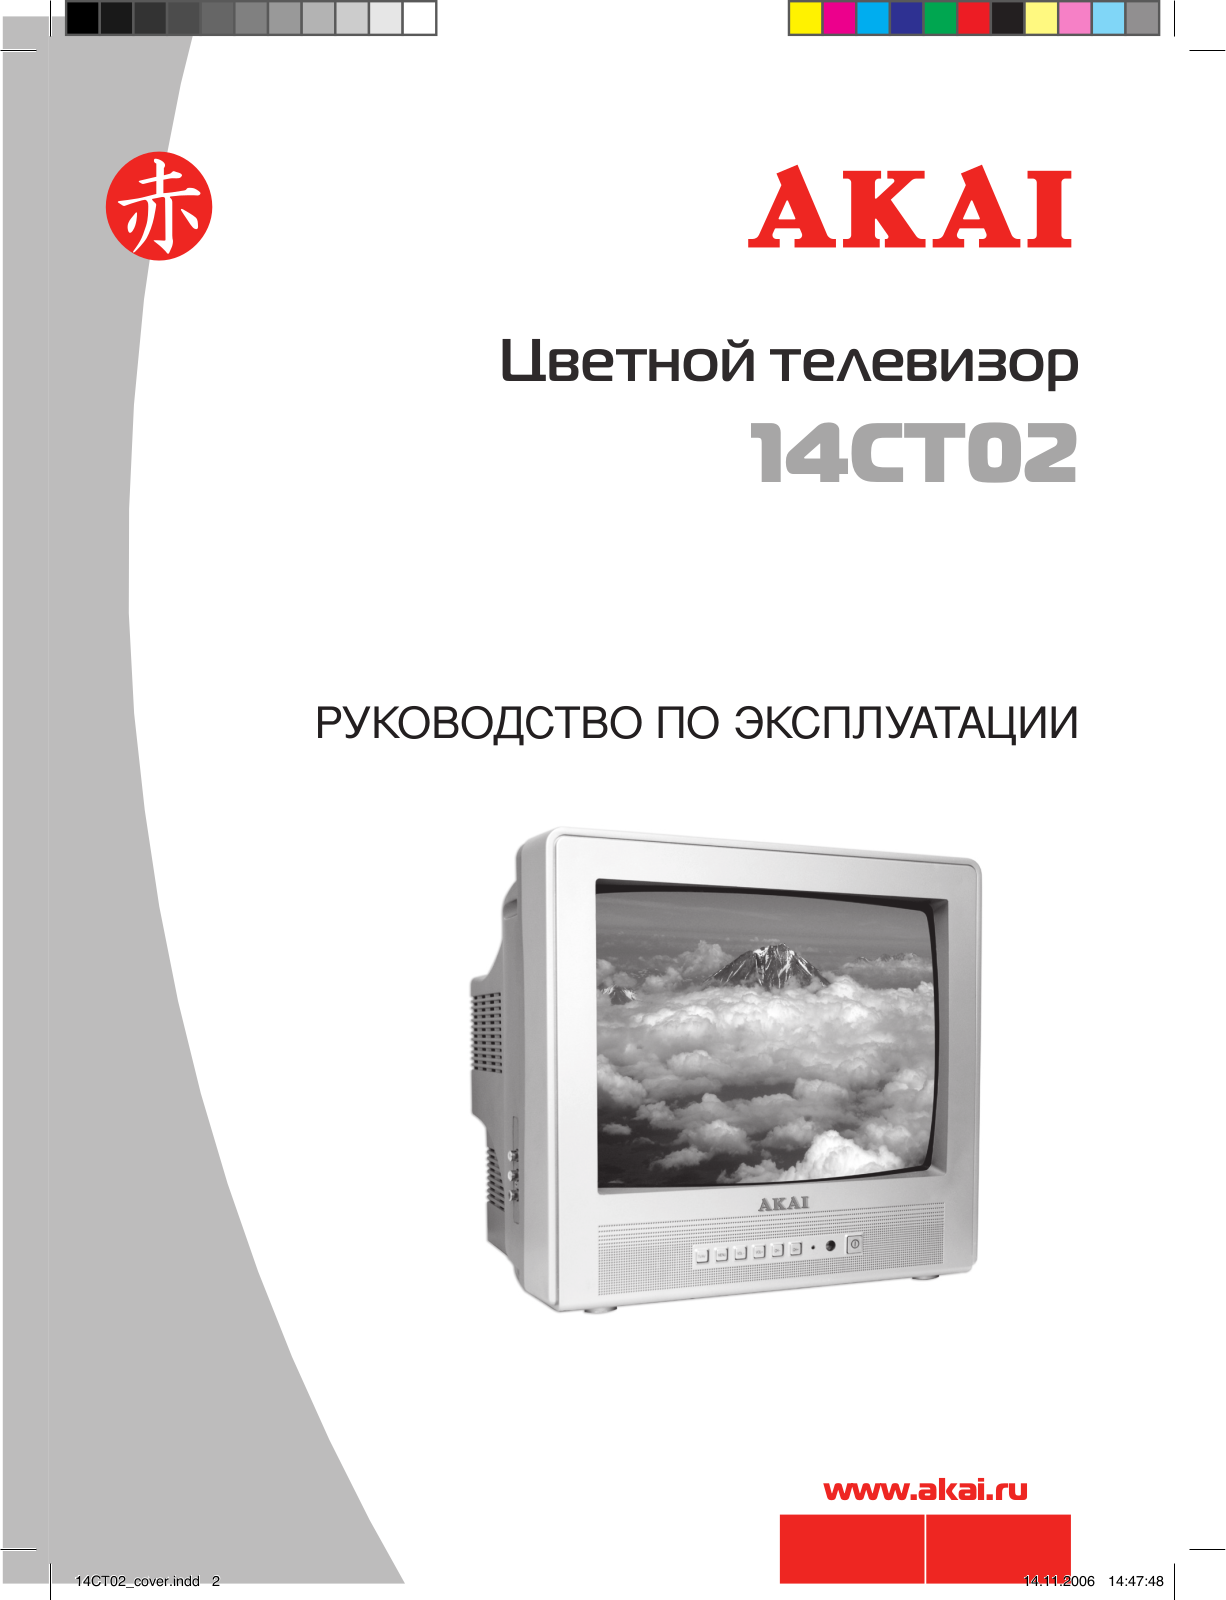 Akai 14CT02 User Manual